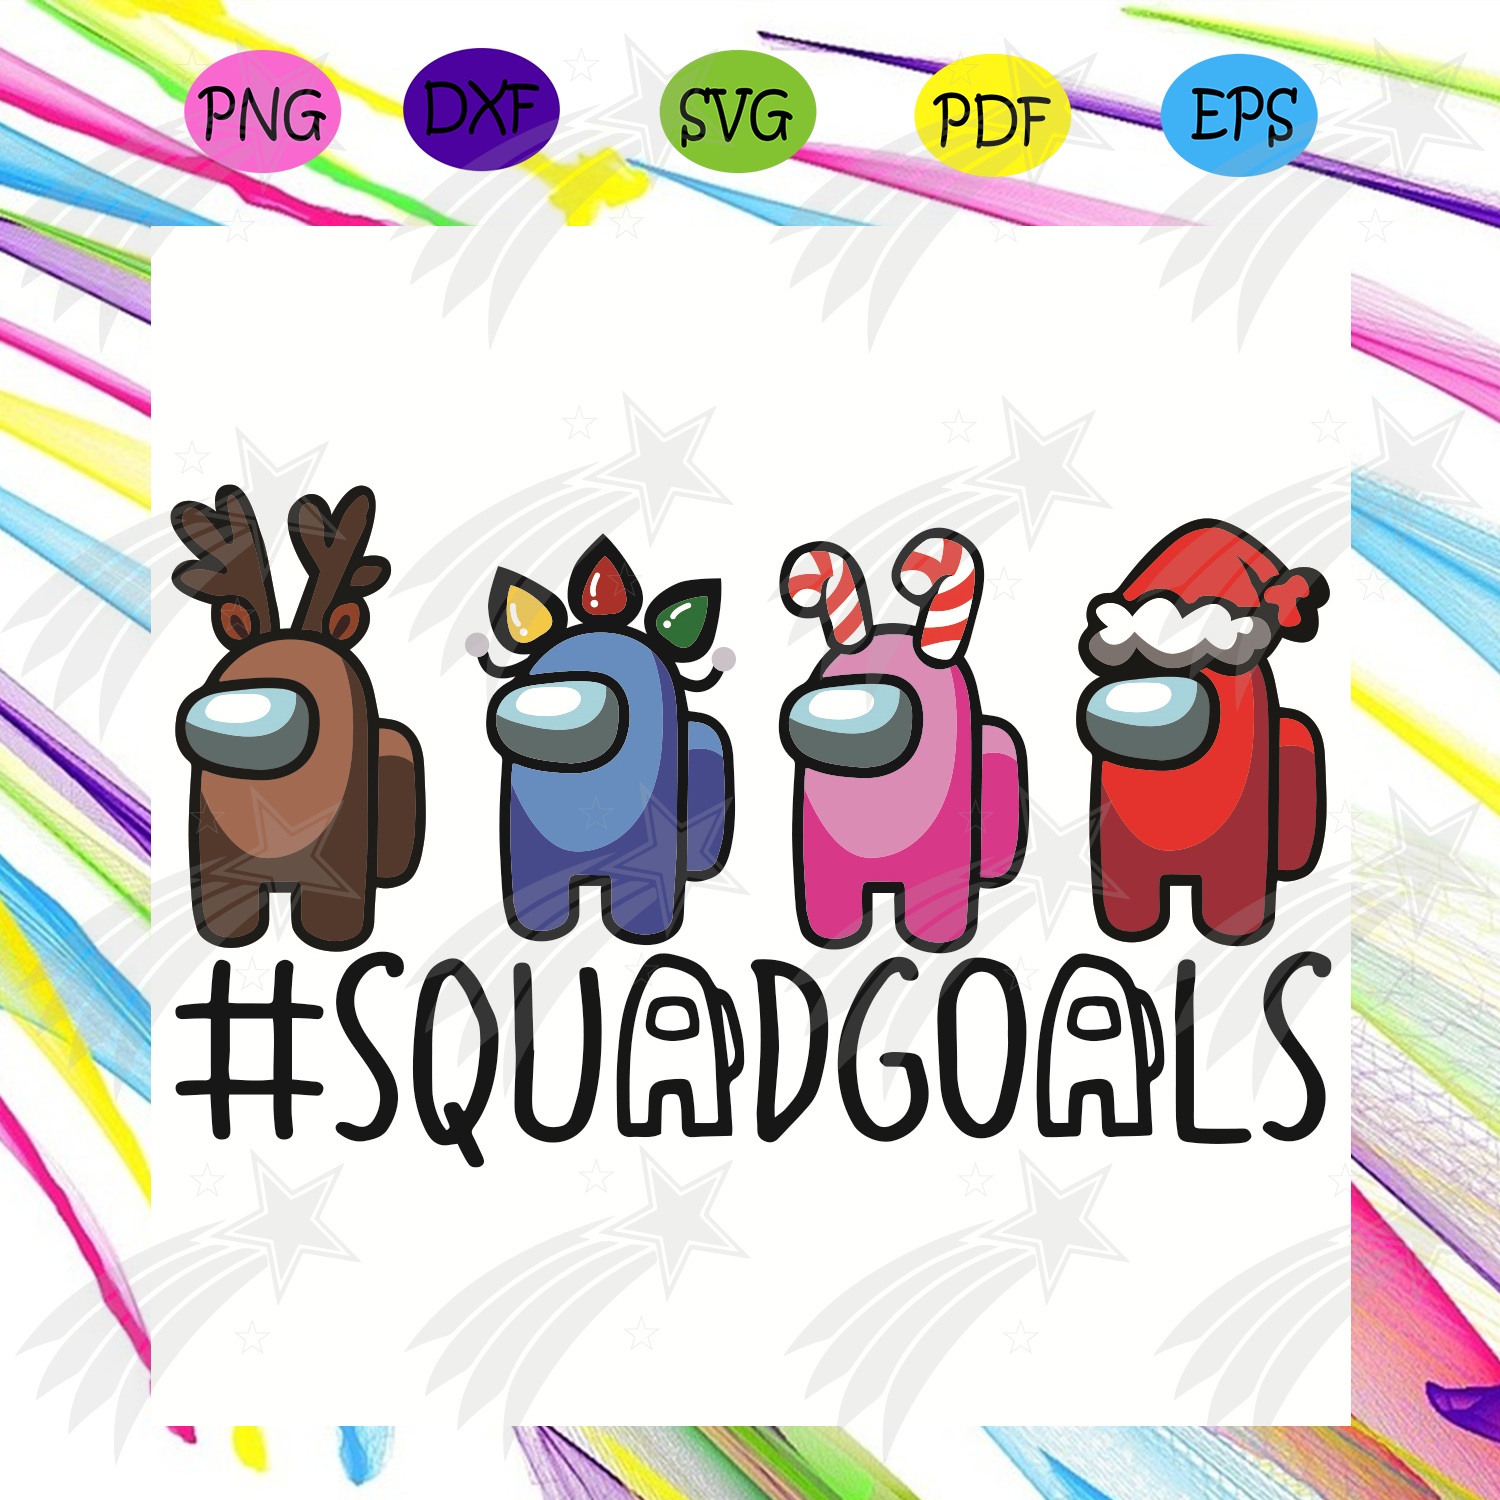 Download Squad Goals Svg Christmas Svg Among Us Christmas Svg Cute Among Us Svg Among Us Reindeer